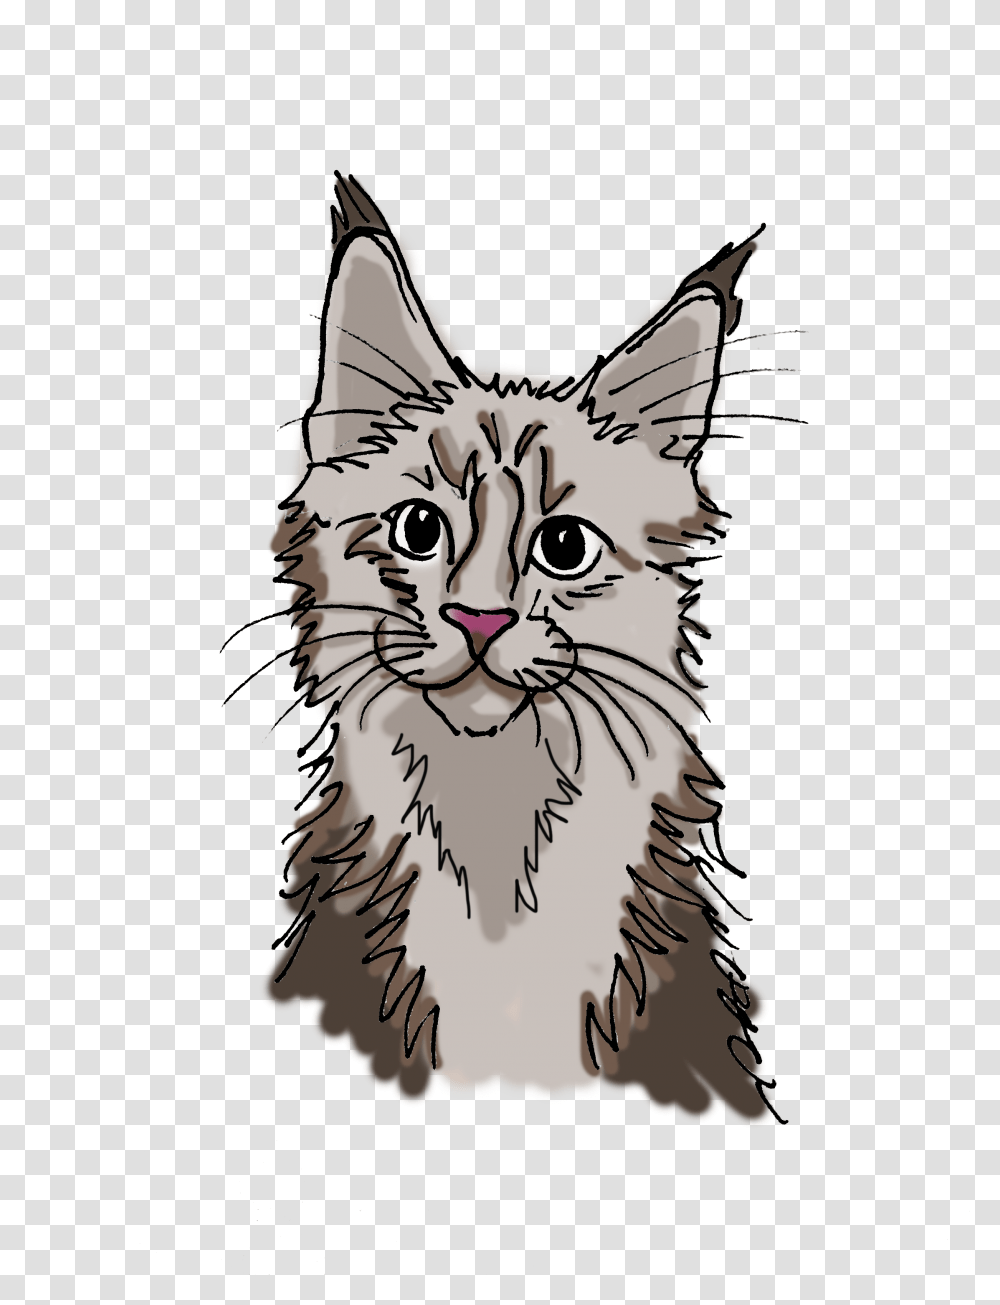 Main Coon Katze Cartoon, Cat, Pet, Mammal, Animal Transparent Png